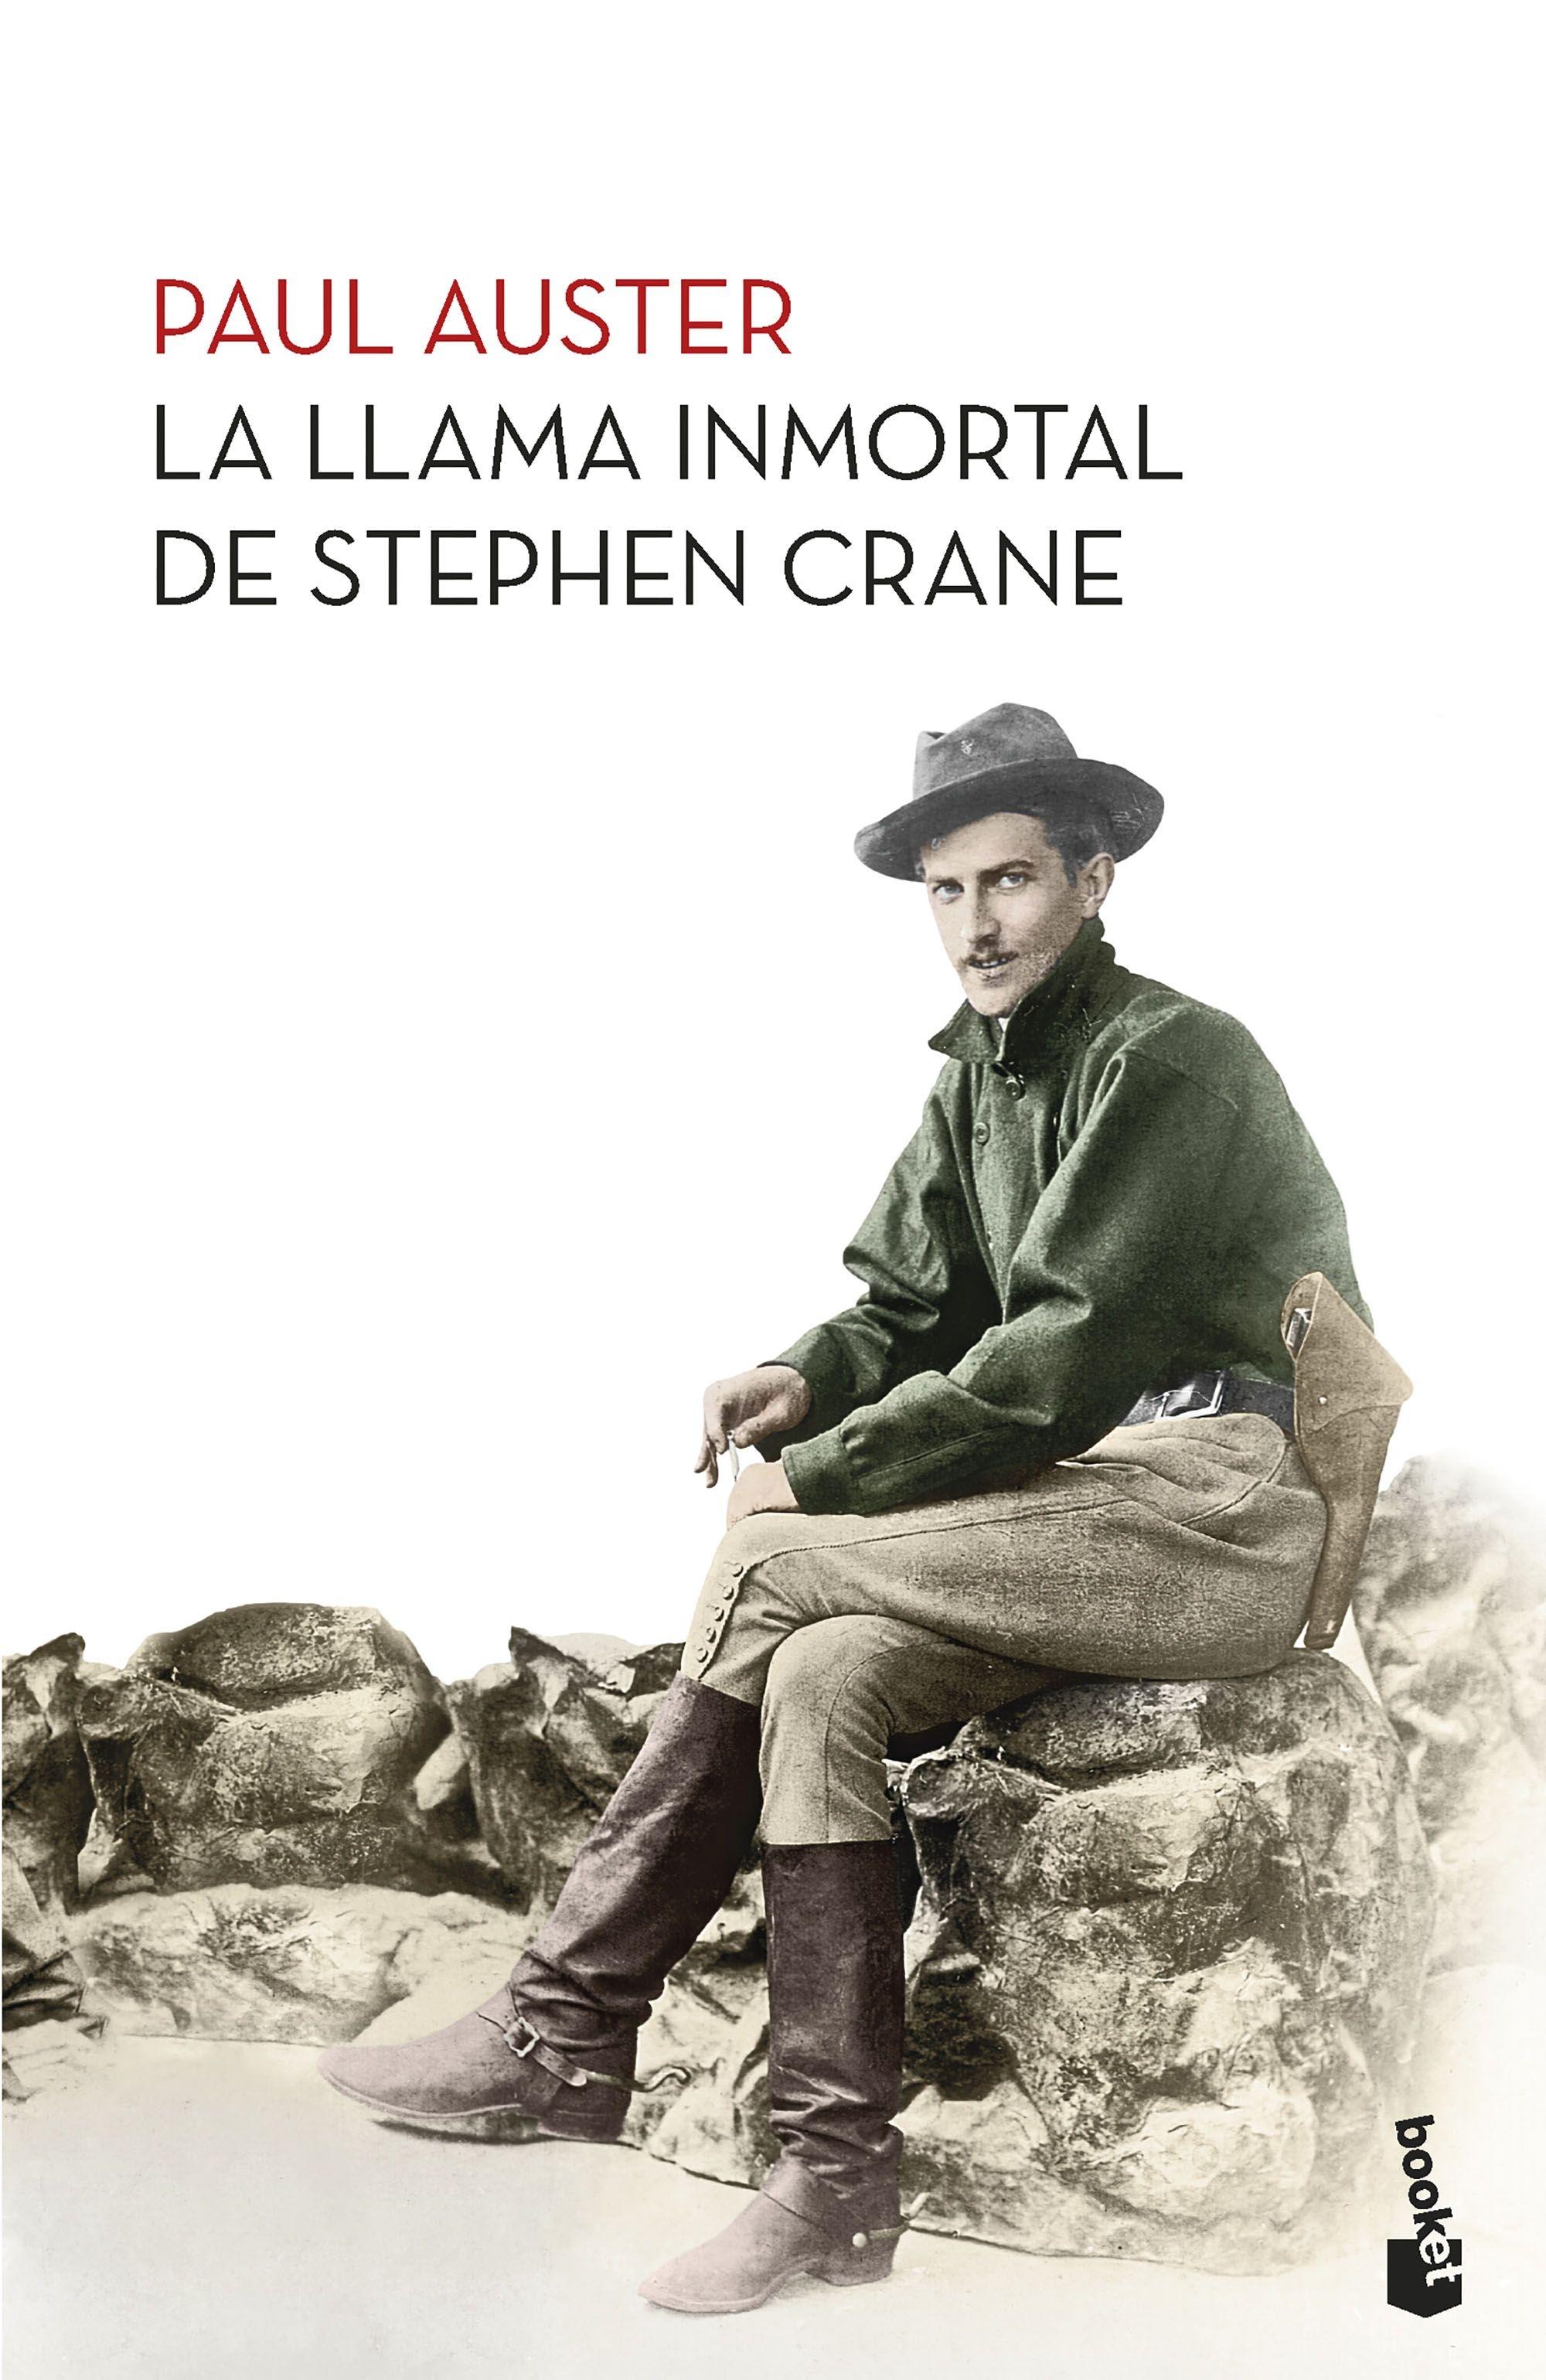 Llama inmortal de Stephen Crane, La